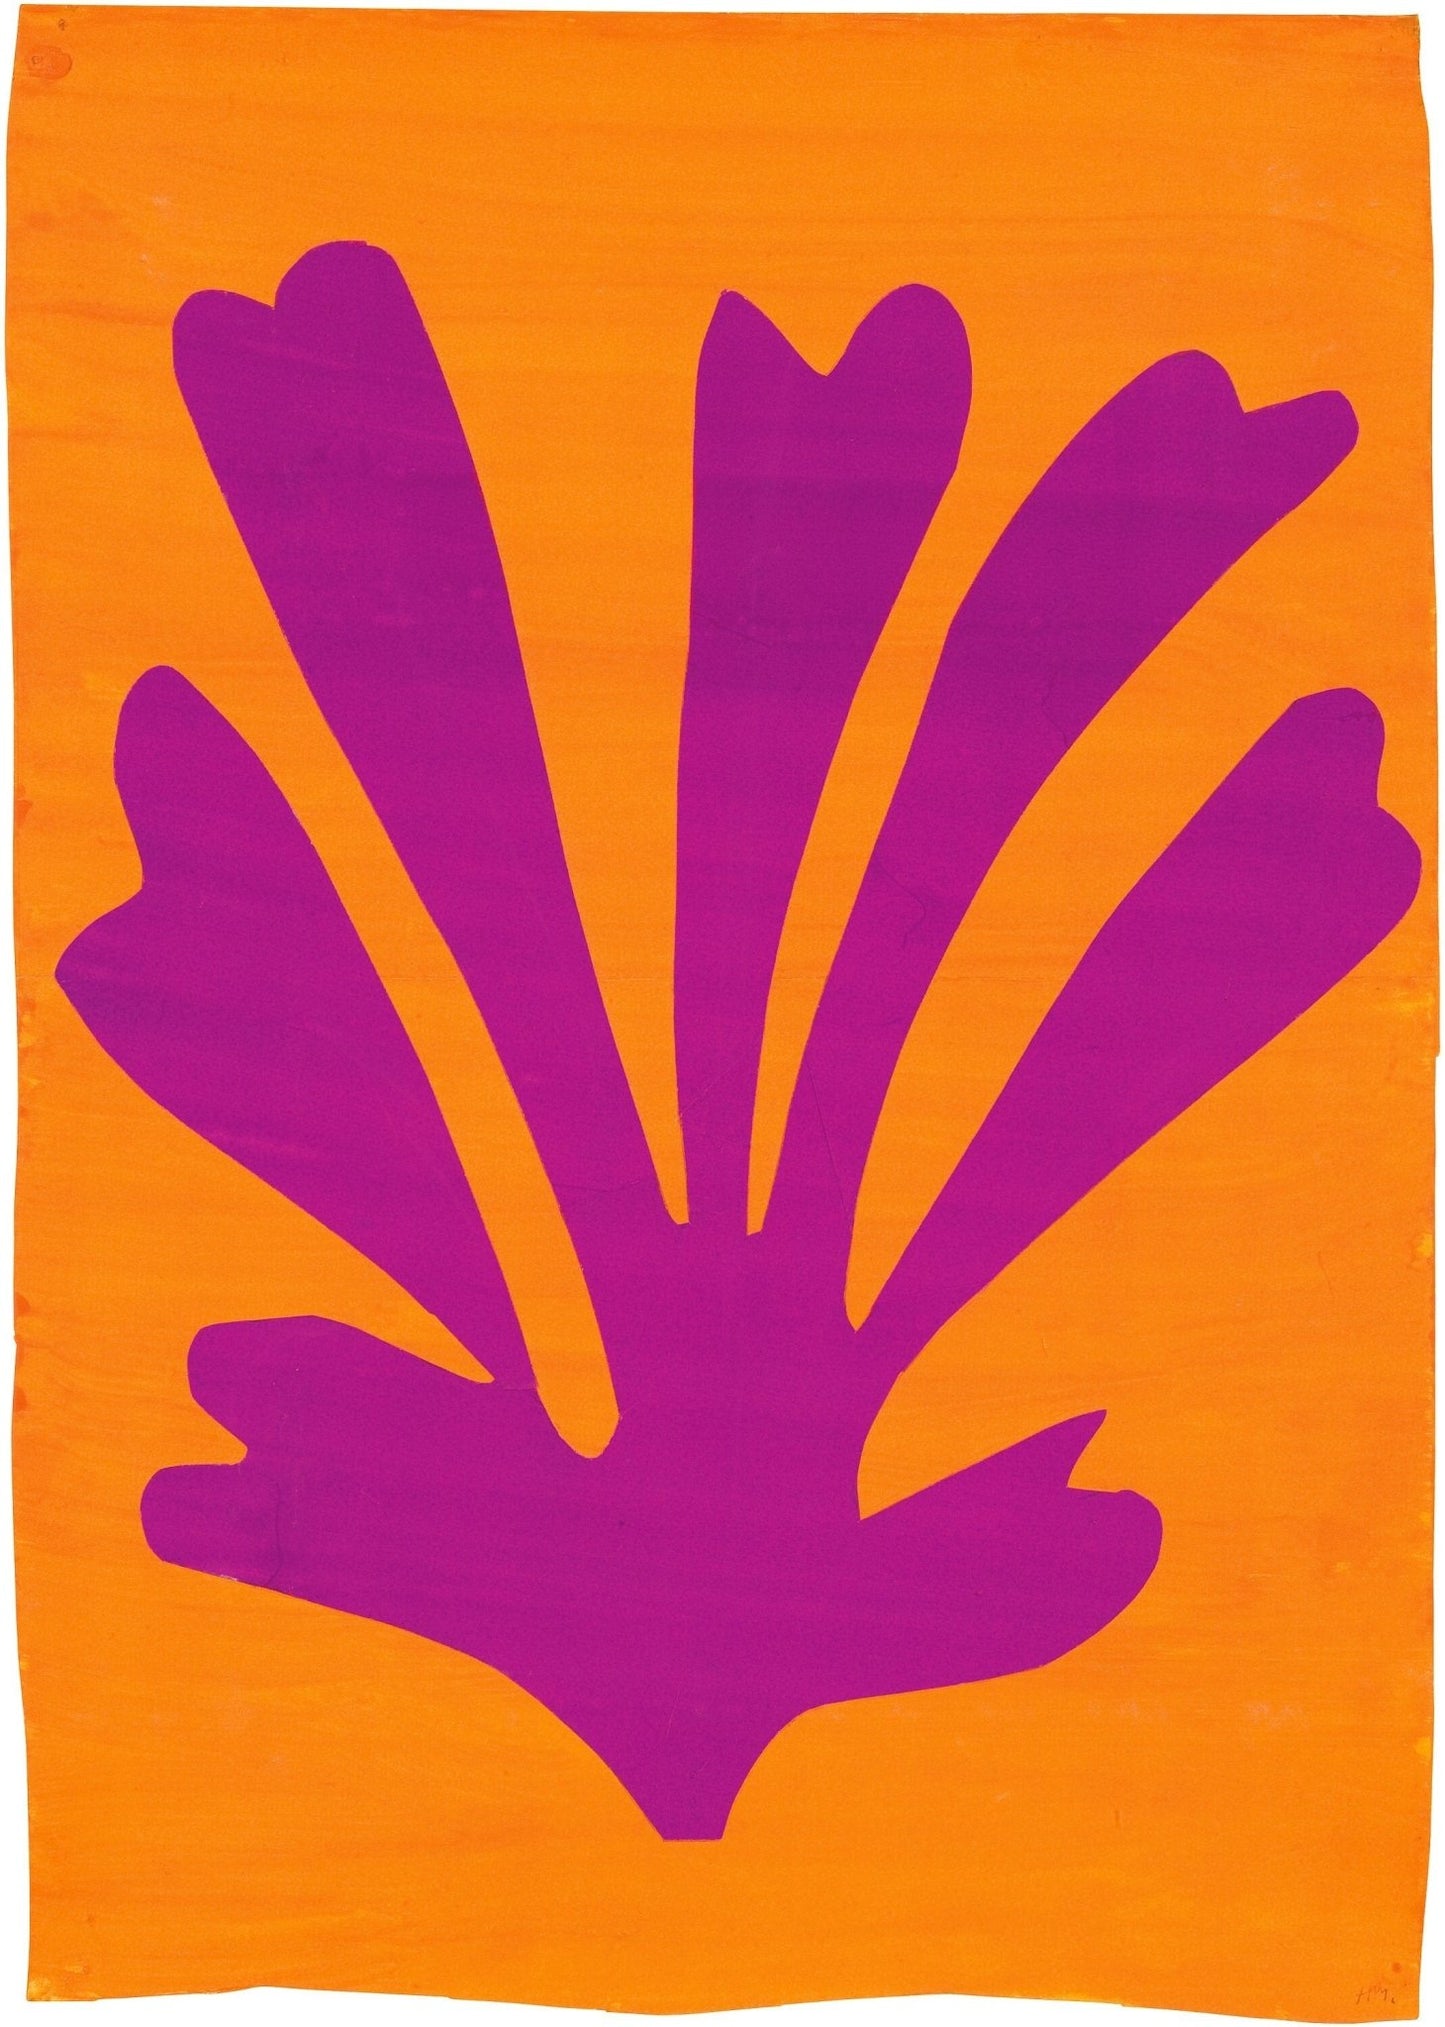 HENRI MATISSE - Feuille de violette